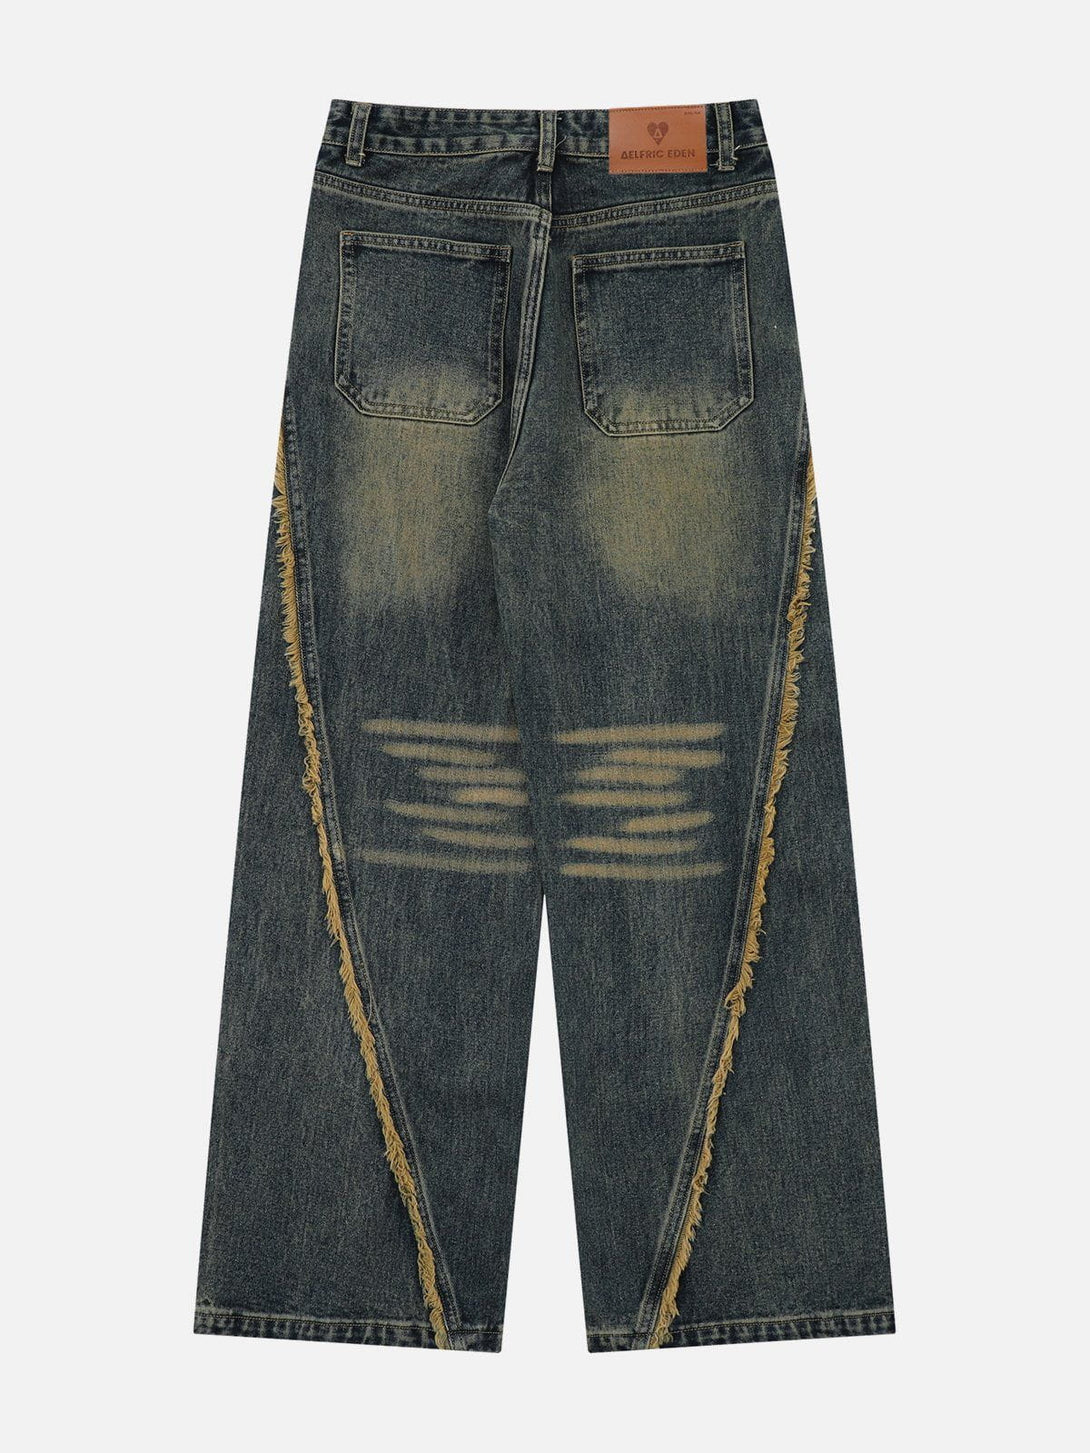 Aelfric Eden Fringe Washed Jeans – Aelfric eden